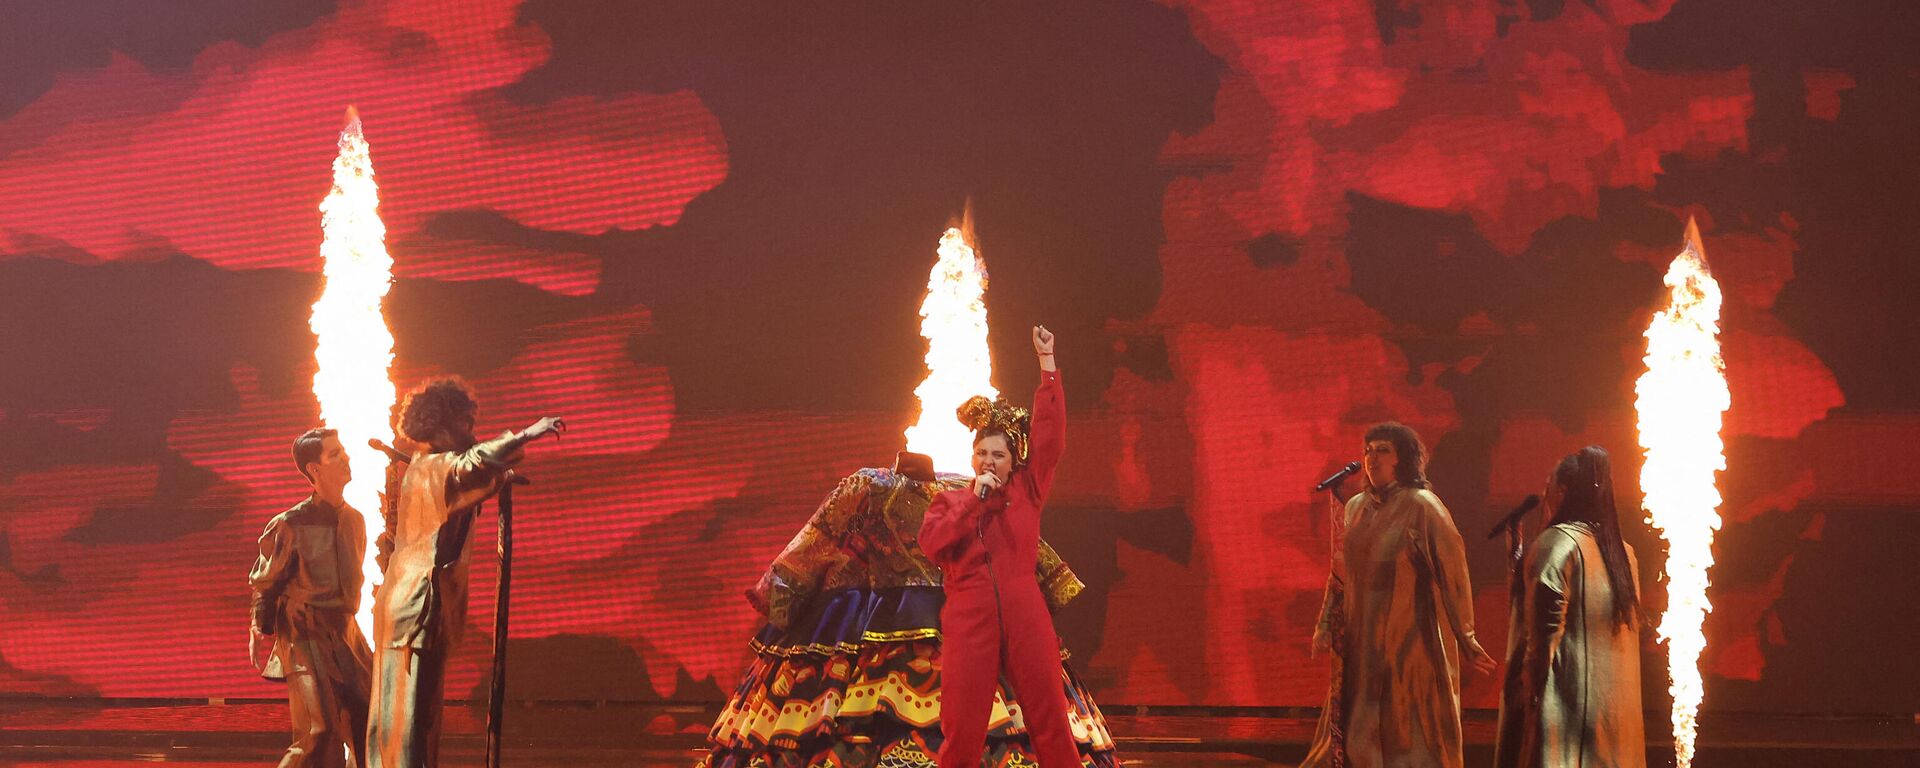 Россиянка Манижа выступает во время первого полуфинала 65-го конкурса Евровидение-2021 - Sputnik Таджикистан, 1920, 18.05.2021